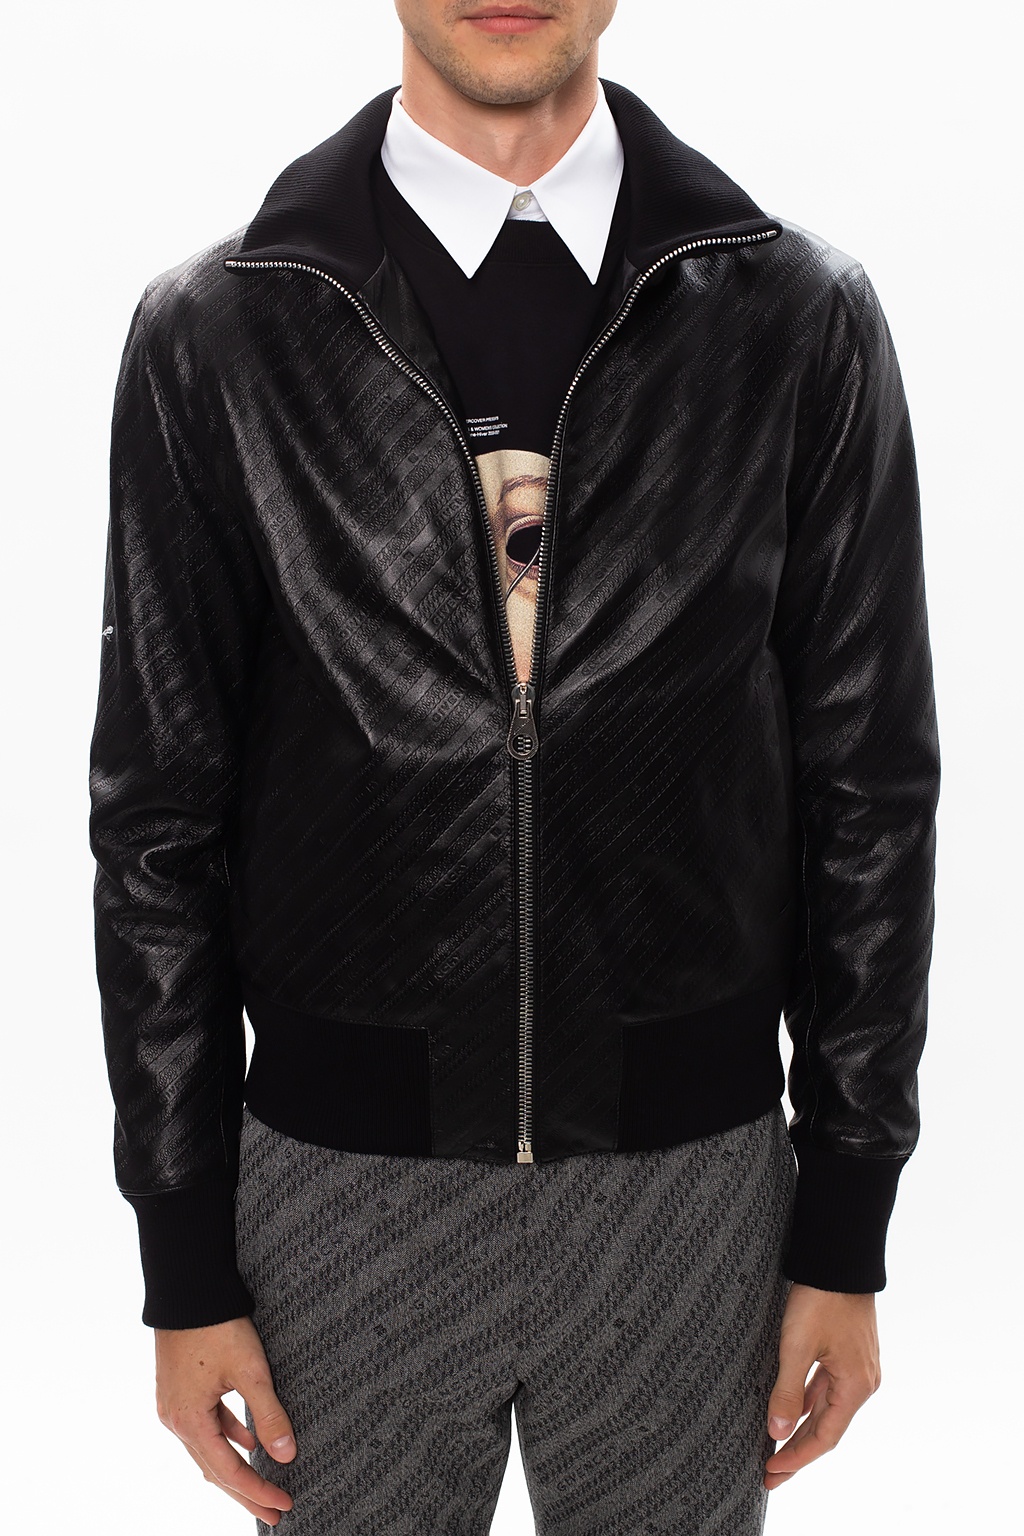 Black Leather jacket with logo Givenchy - Vitkac Germany